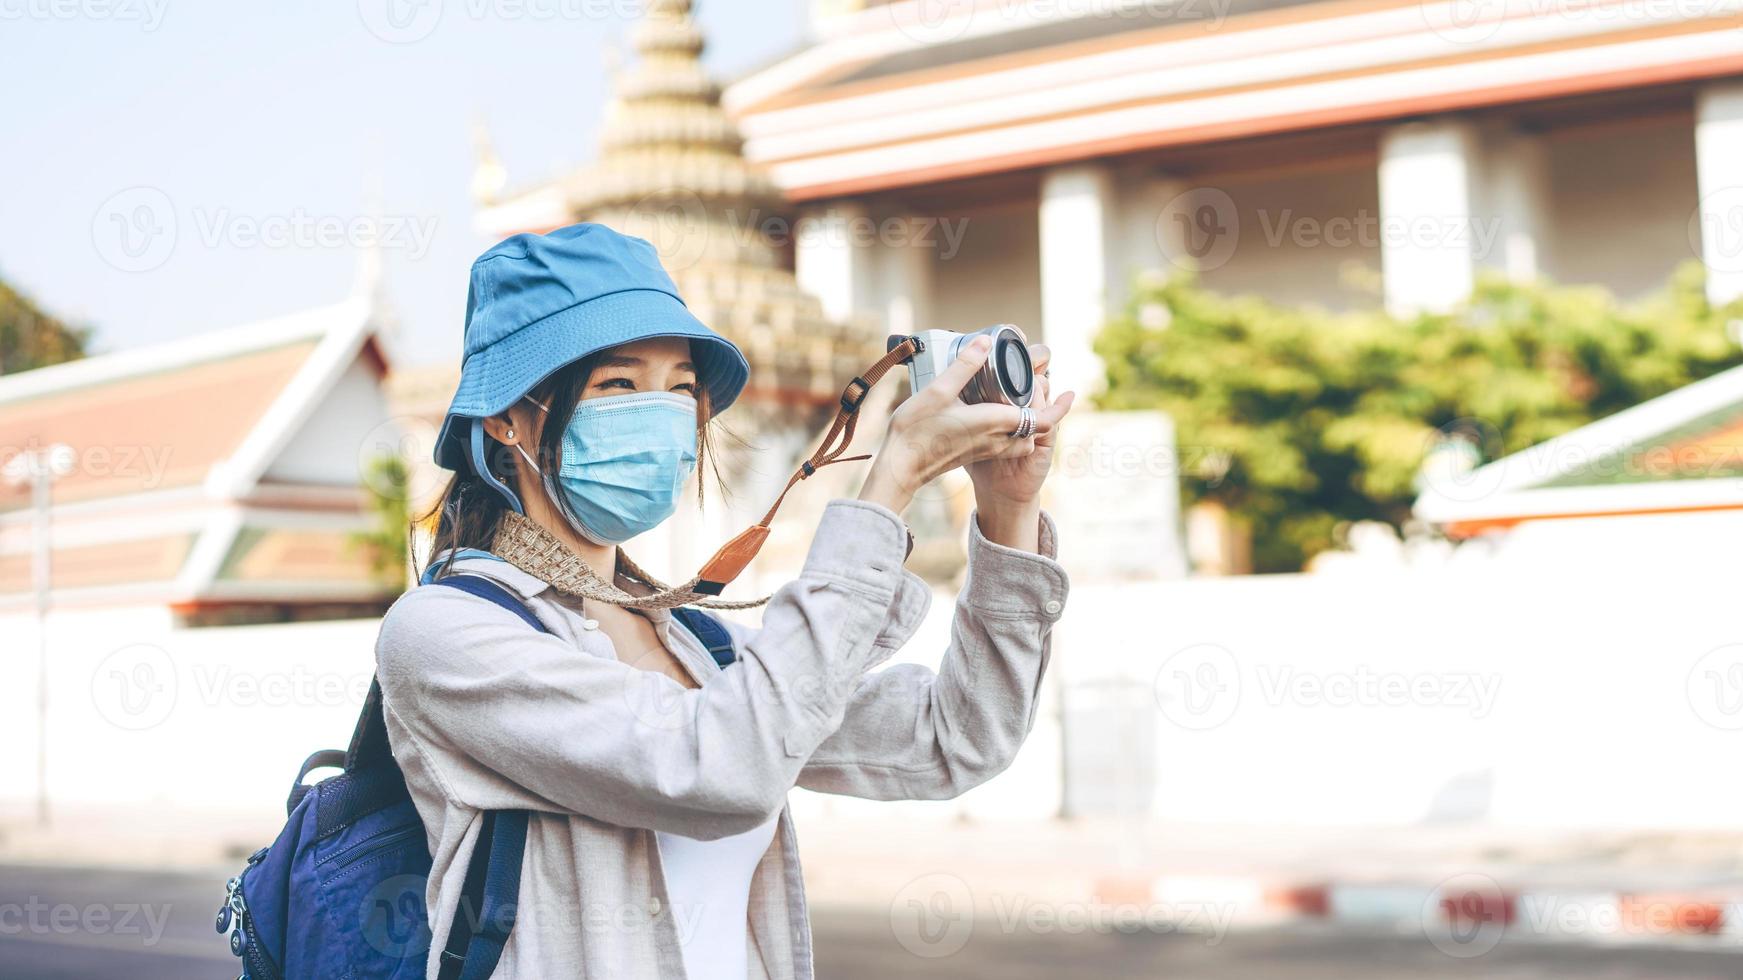 jonge volwassen aziatische vrouw rugzakreiziger draag gezichtsmasker neem een foto met de camera.